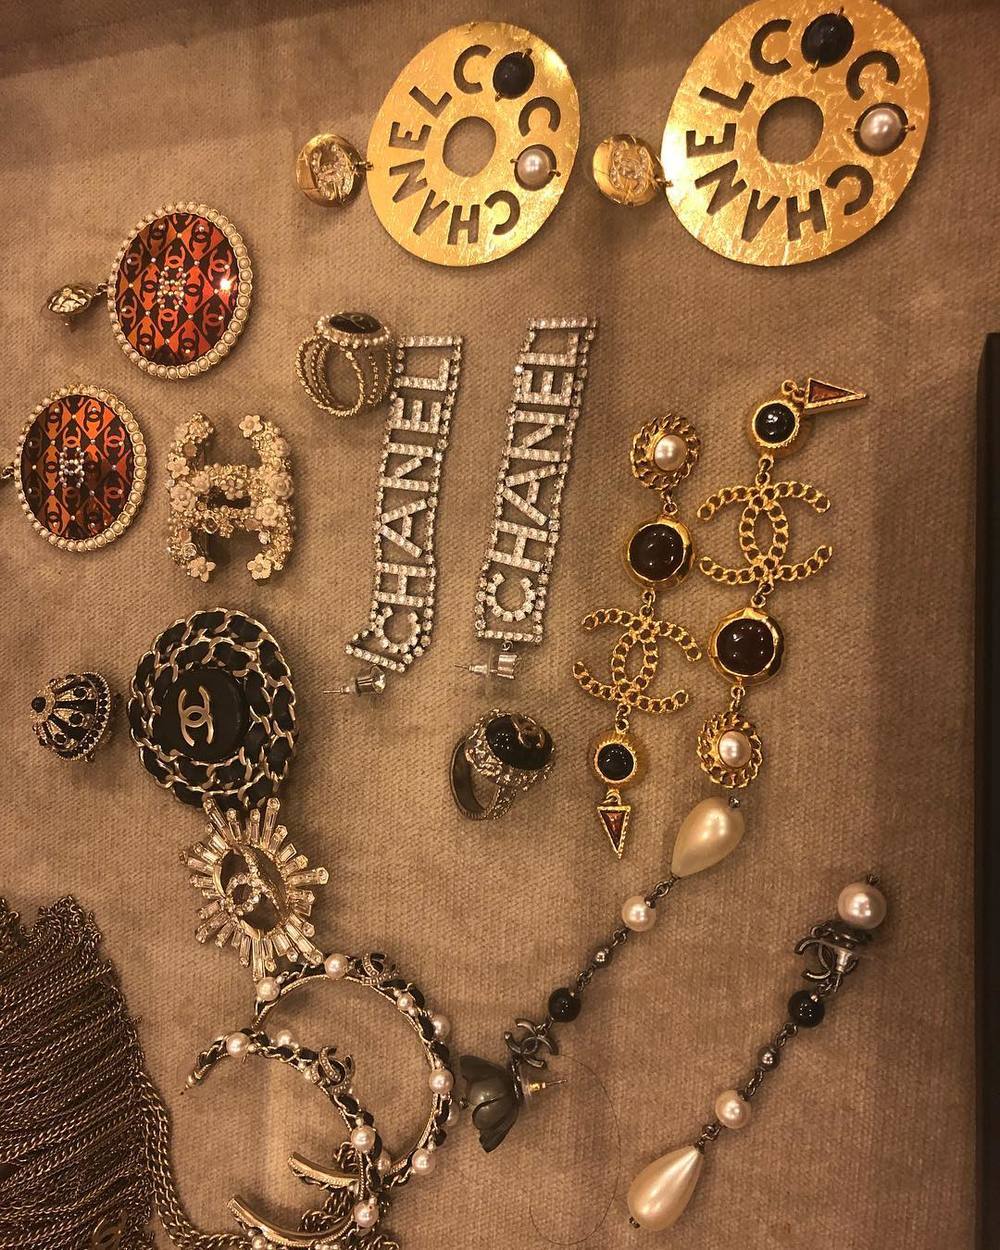  
Thiên đường khuyên tai của Phượng Chanel, cô mua hàng chục item trong mỗi lần mua sắm. (Ảnh: Instagram nhân vật)